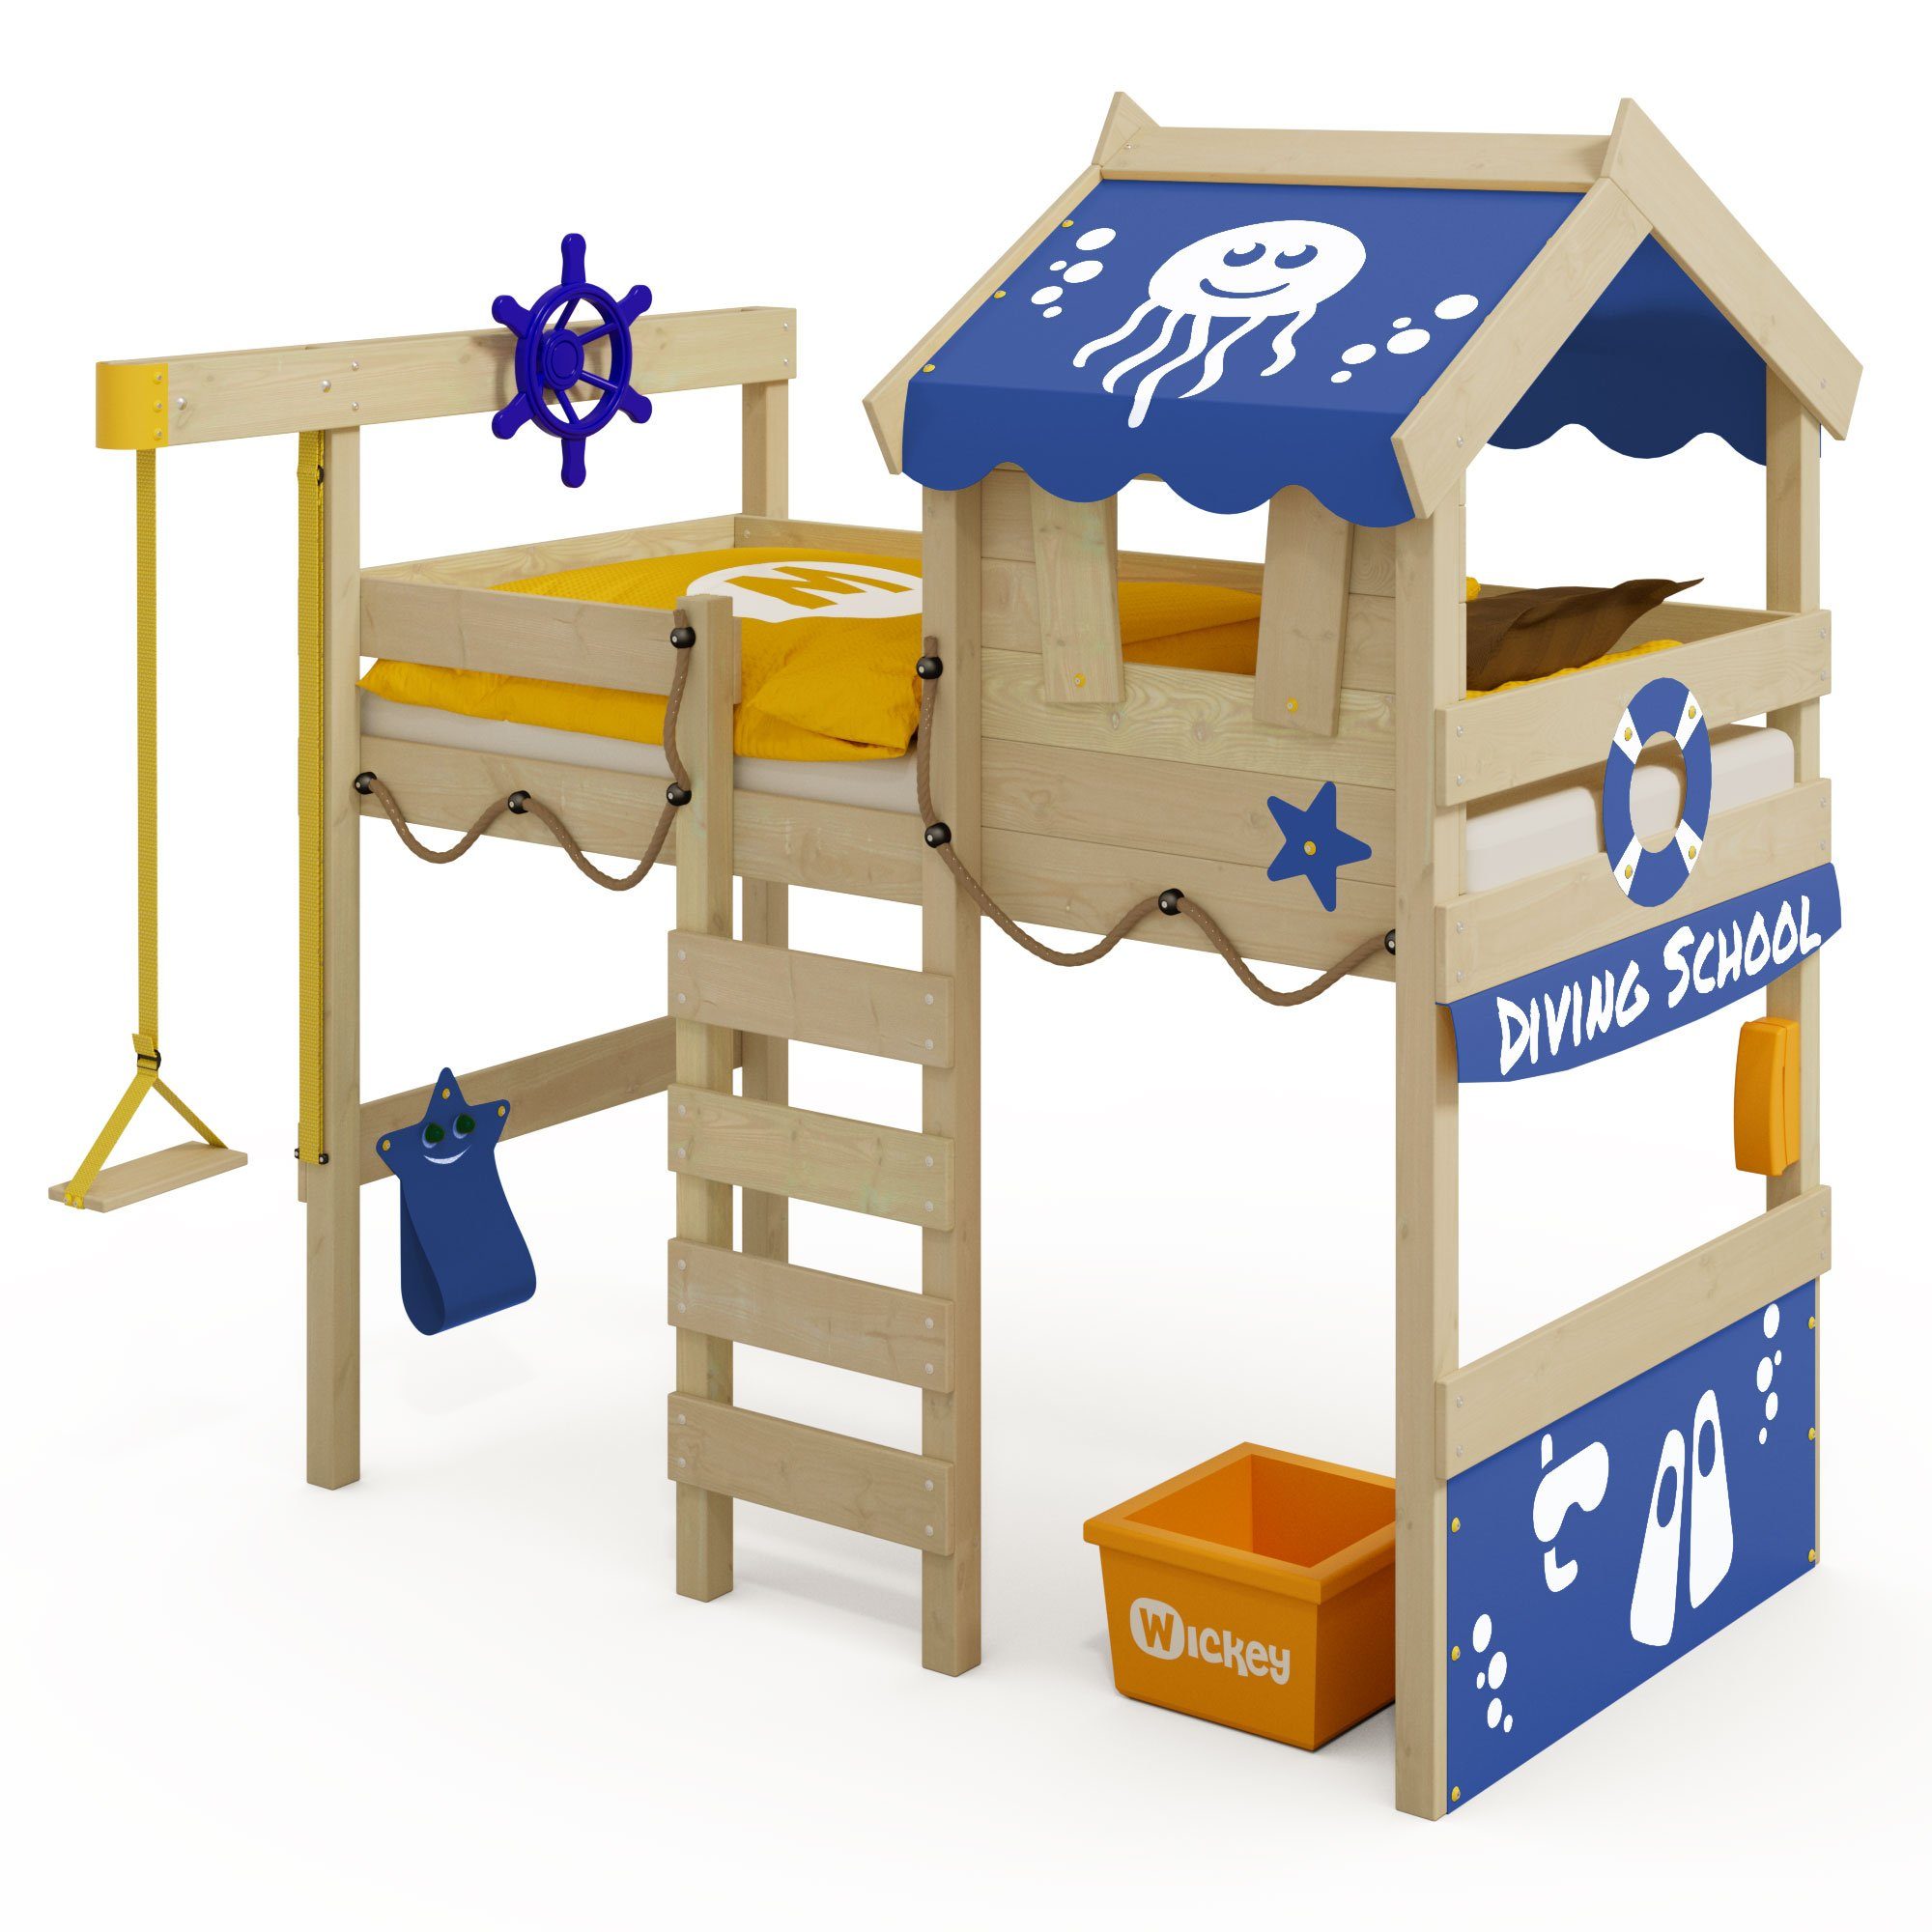 Wickey Kinderbett Crazy Jelly - Spielbett, 90 x 200 cm, Etagenbett (Holzpaket aus Pfosten und Brettern, Spielbett für Kinder), Massivholzbrett Blau